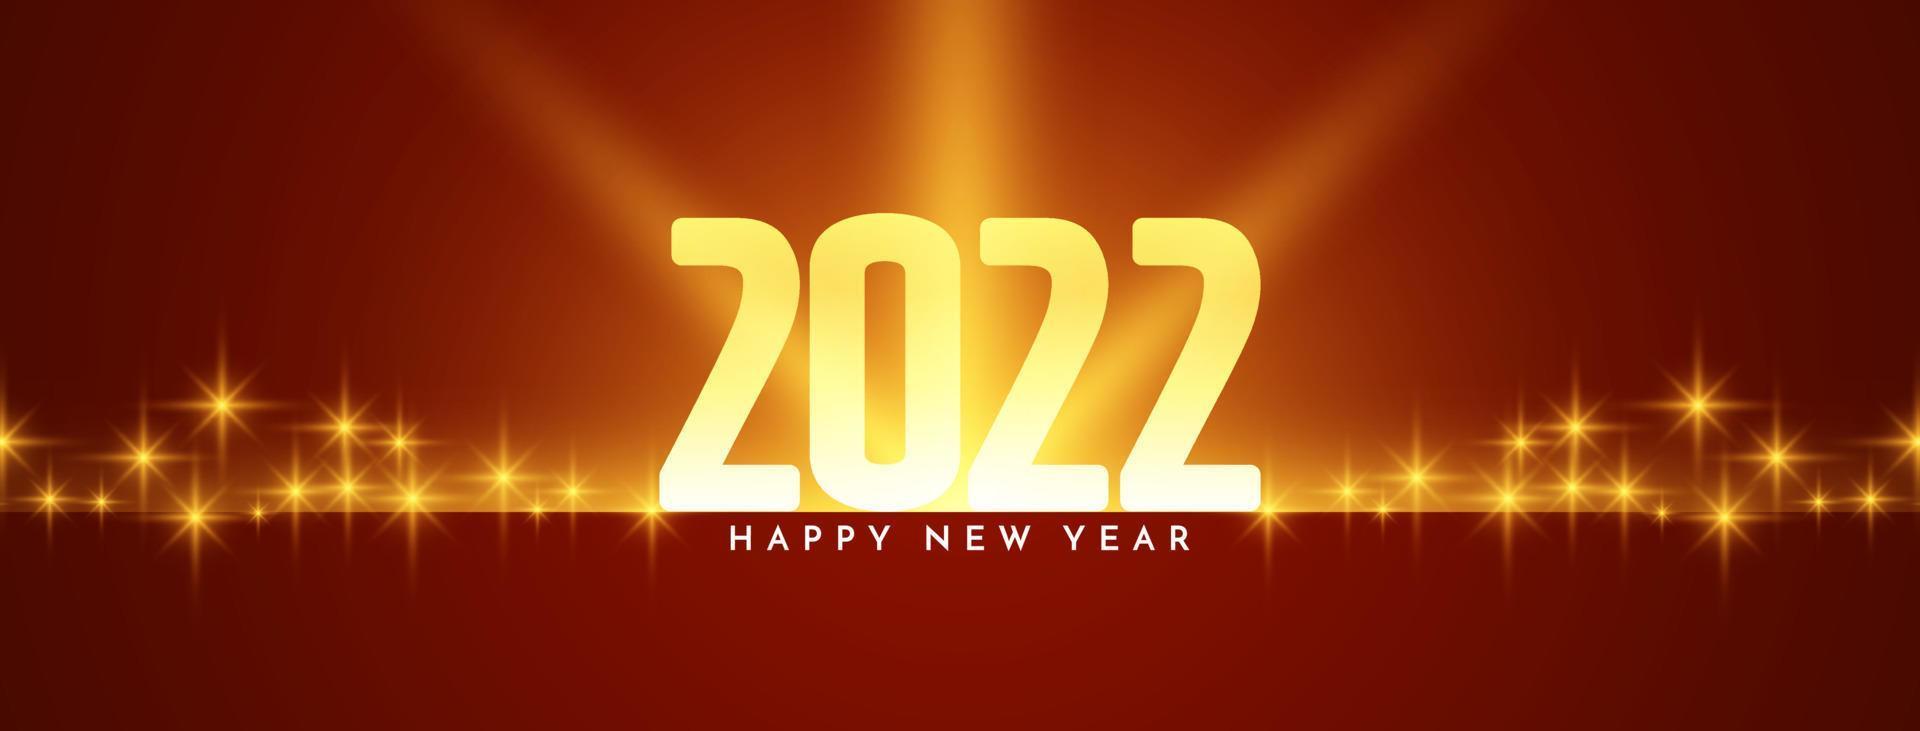 felice anno nuovo 2022 incandescente banner design lucido vettore